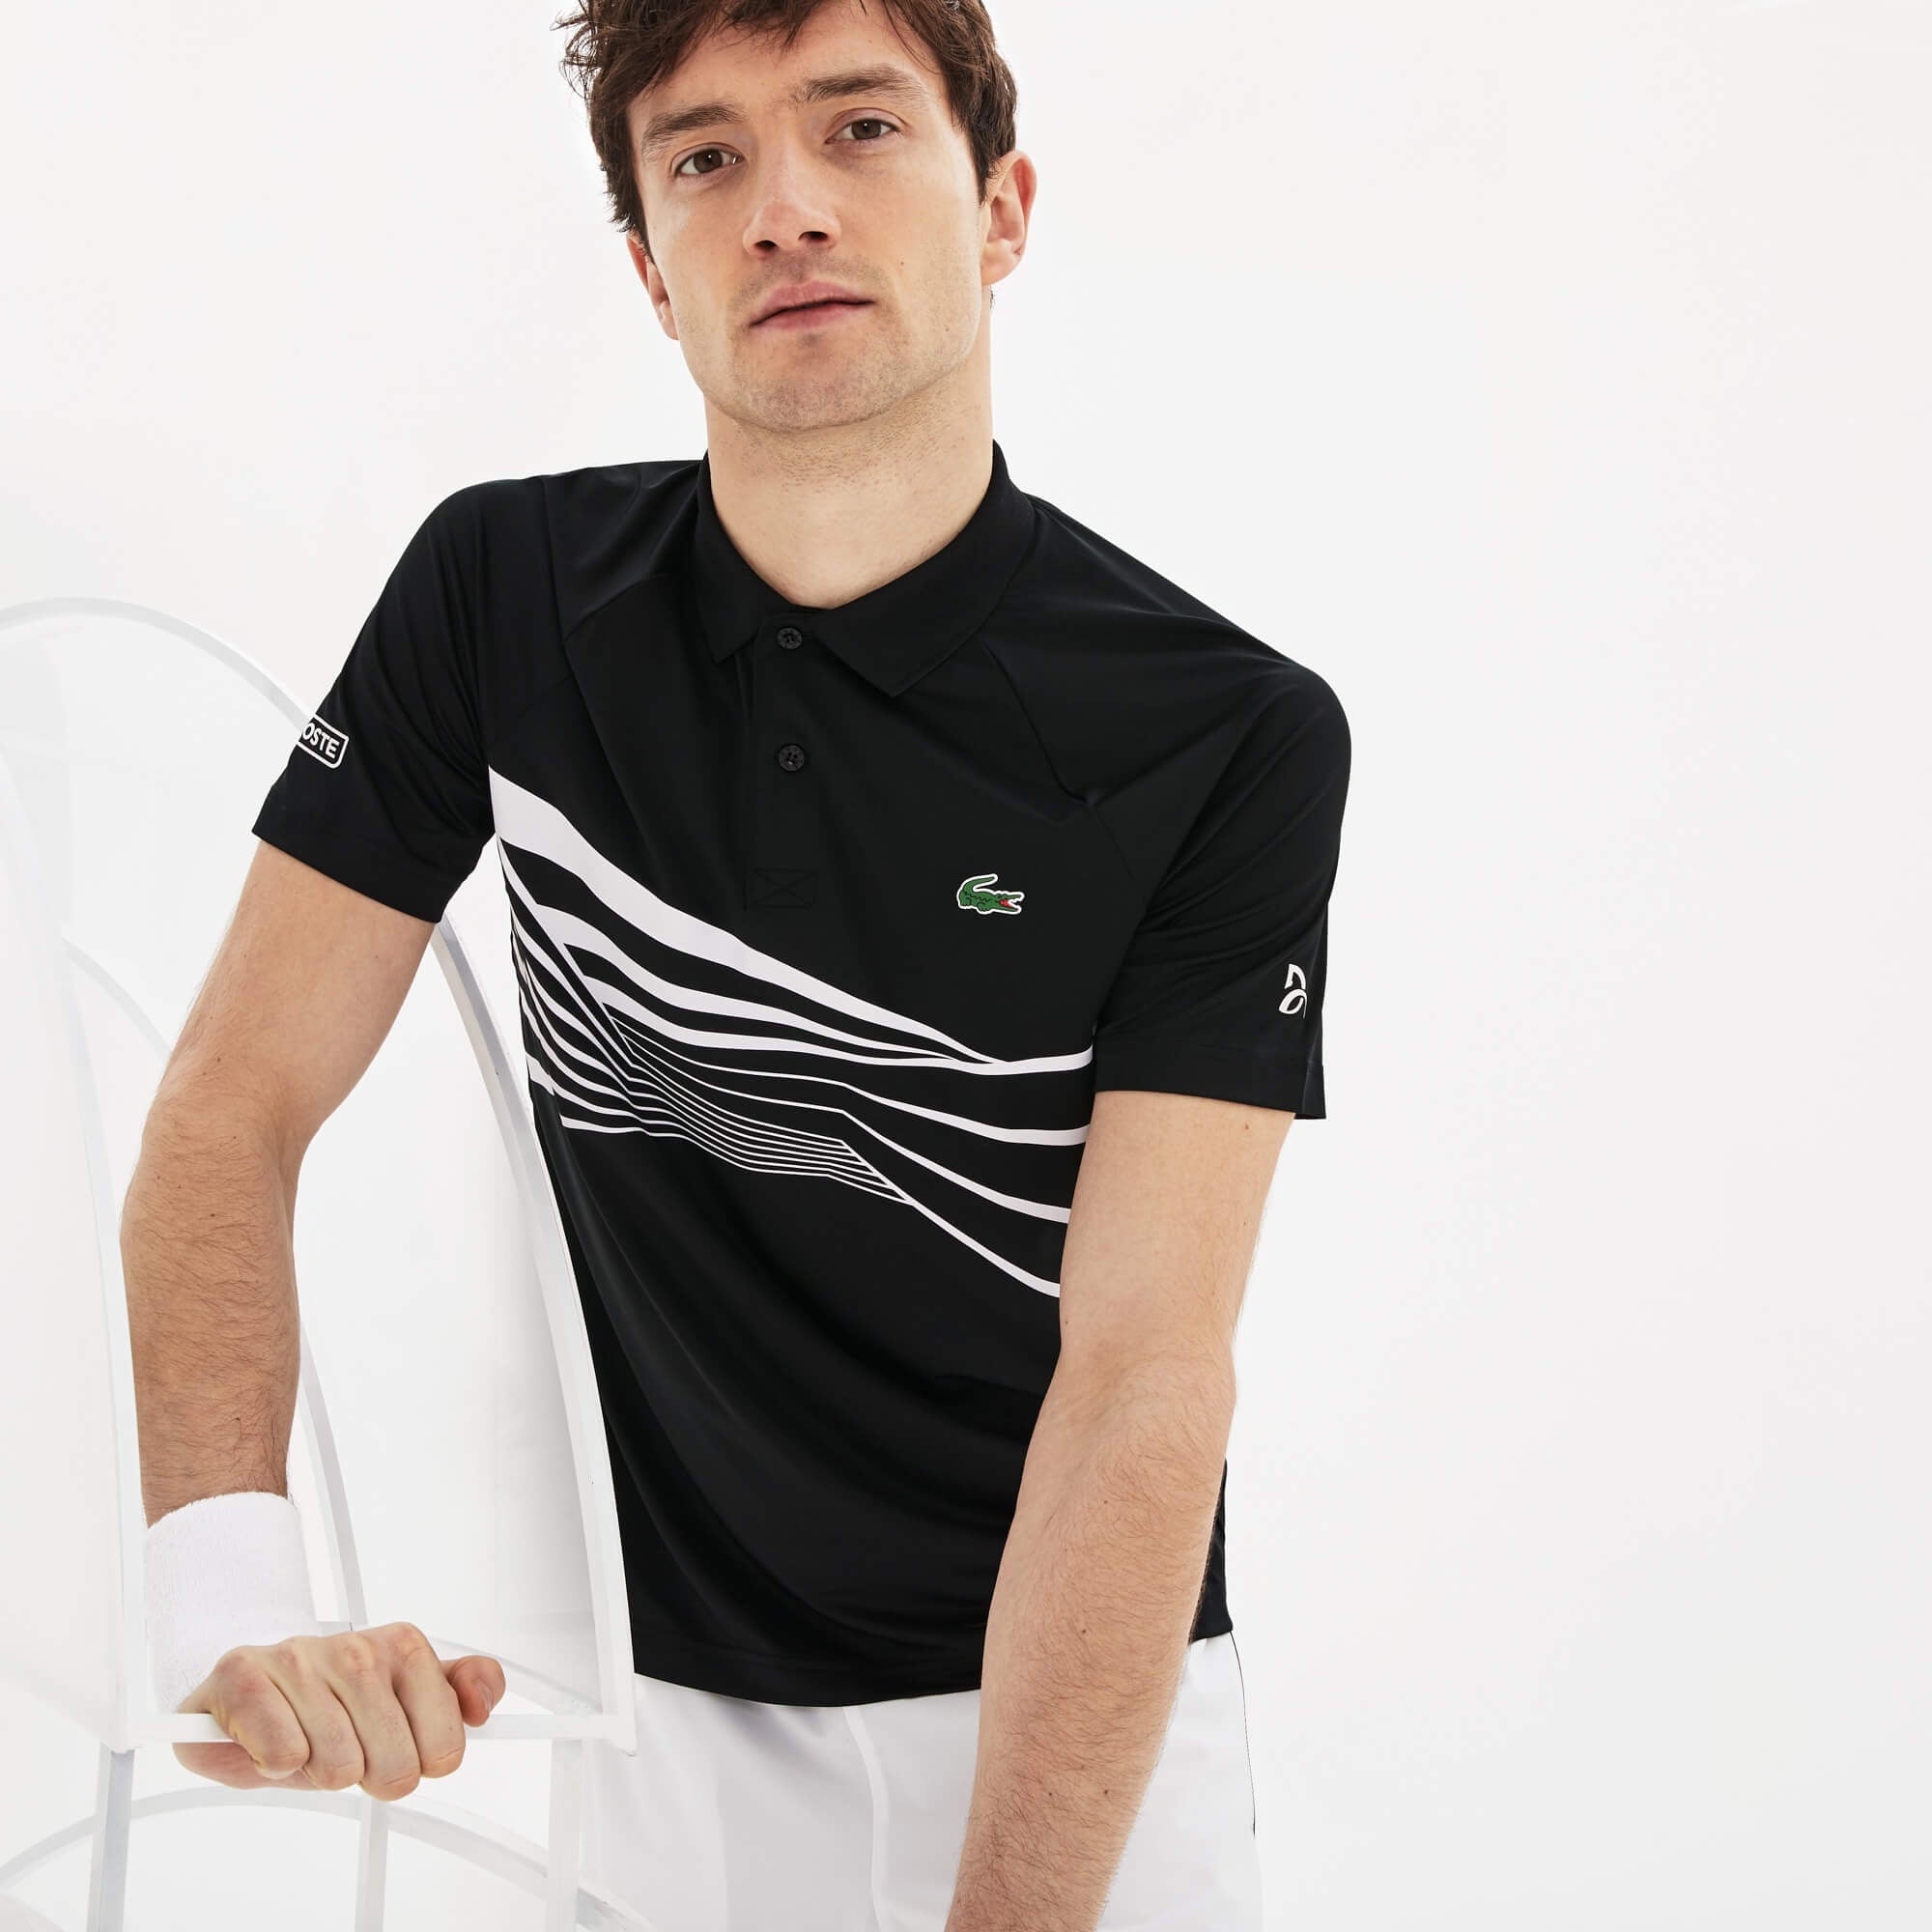 Lacoste Men's SPORT Novak Djokovic Collection Tech Jersey Polo Black/White